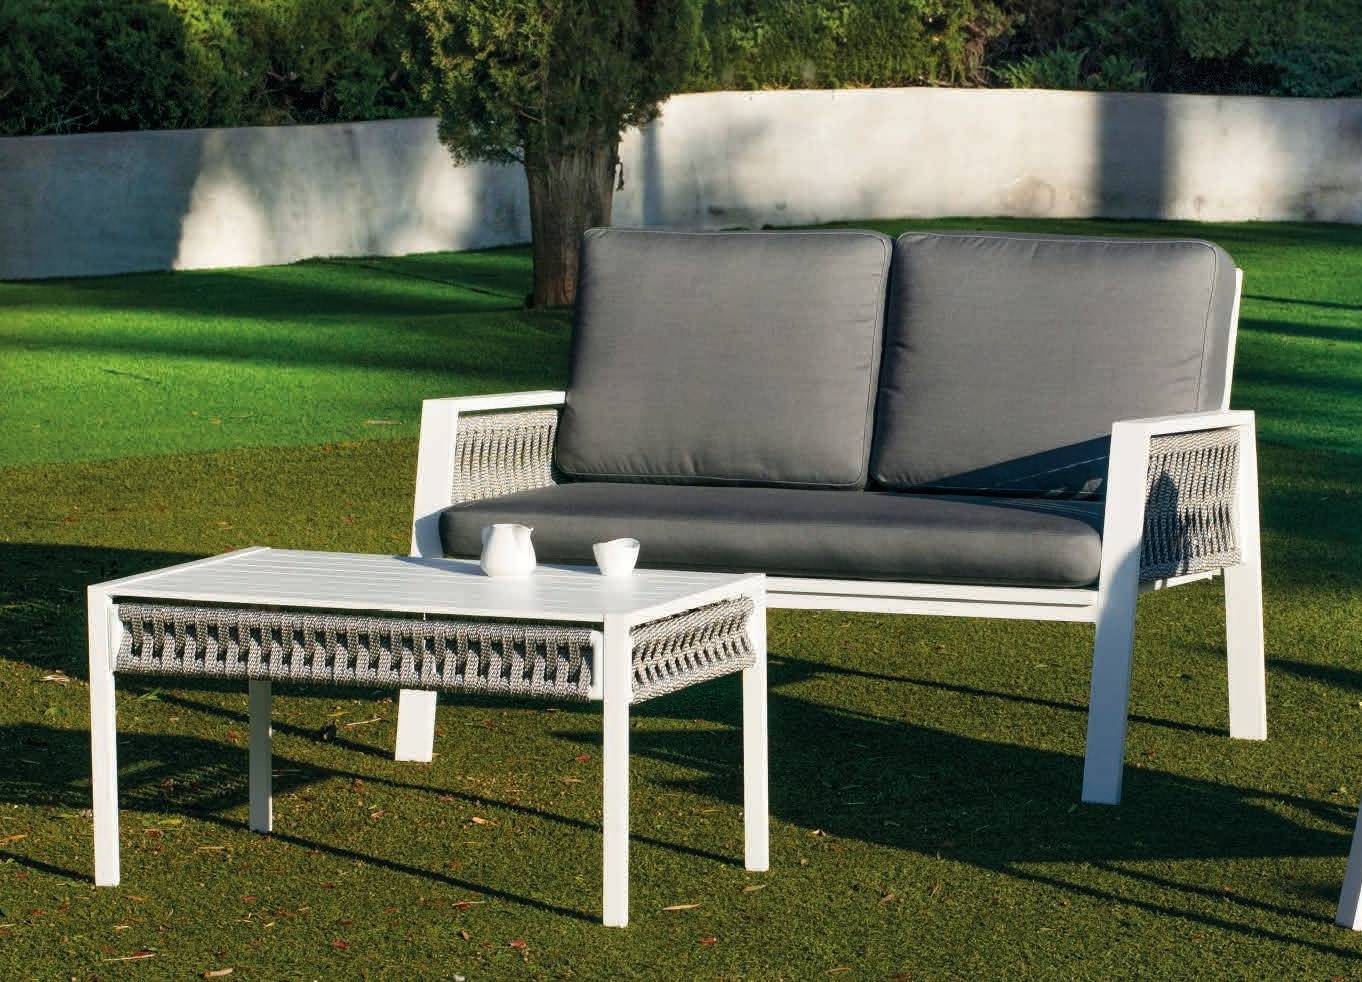 Set Aluminio Aldara-7 - Conjunto aluminio y cuerda: 1 sofá de 2 plazas + 2 sillones + 1 mesa de centro + cojines. En color blanco o antracita.